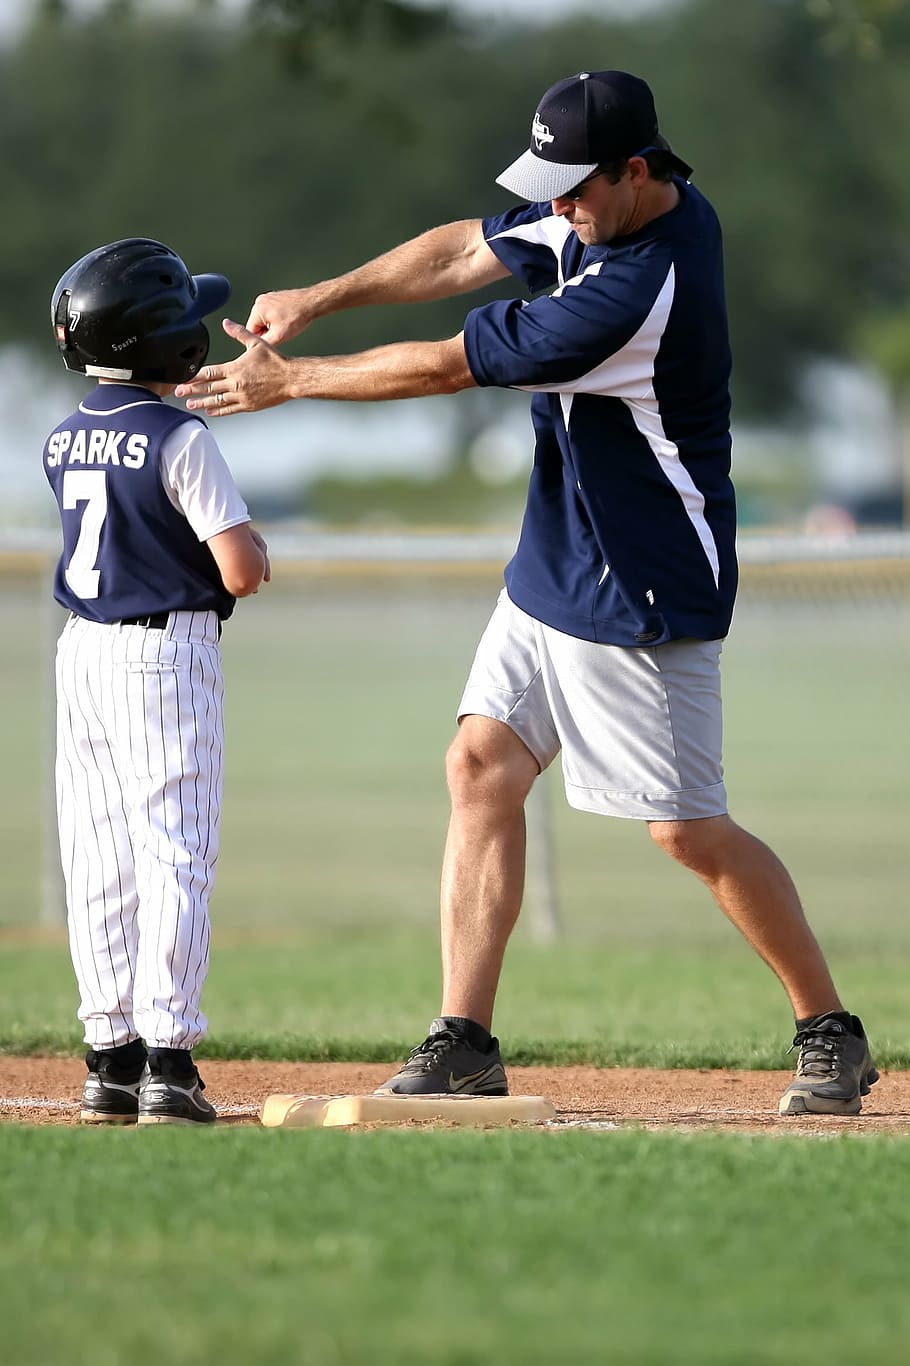 man teaching boy how to swing a bat on base during daytime, baseball